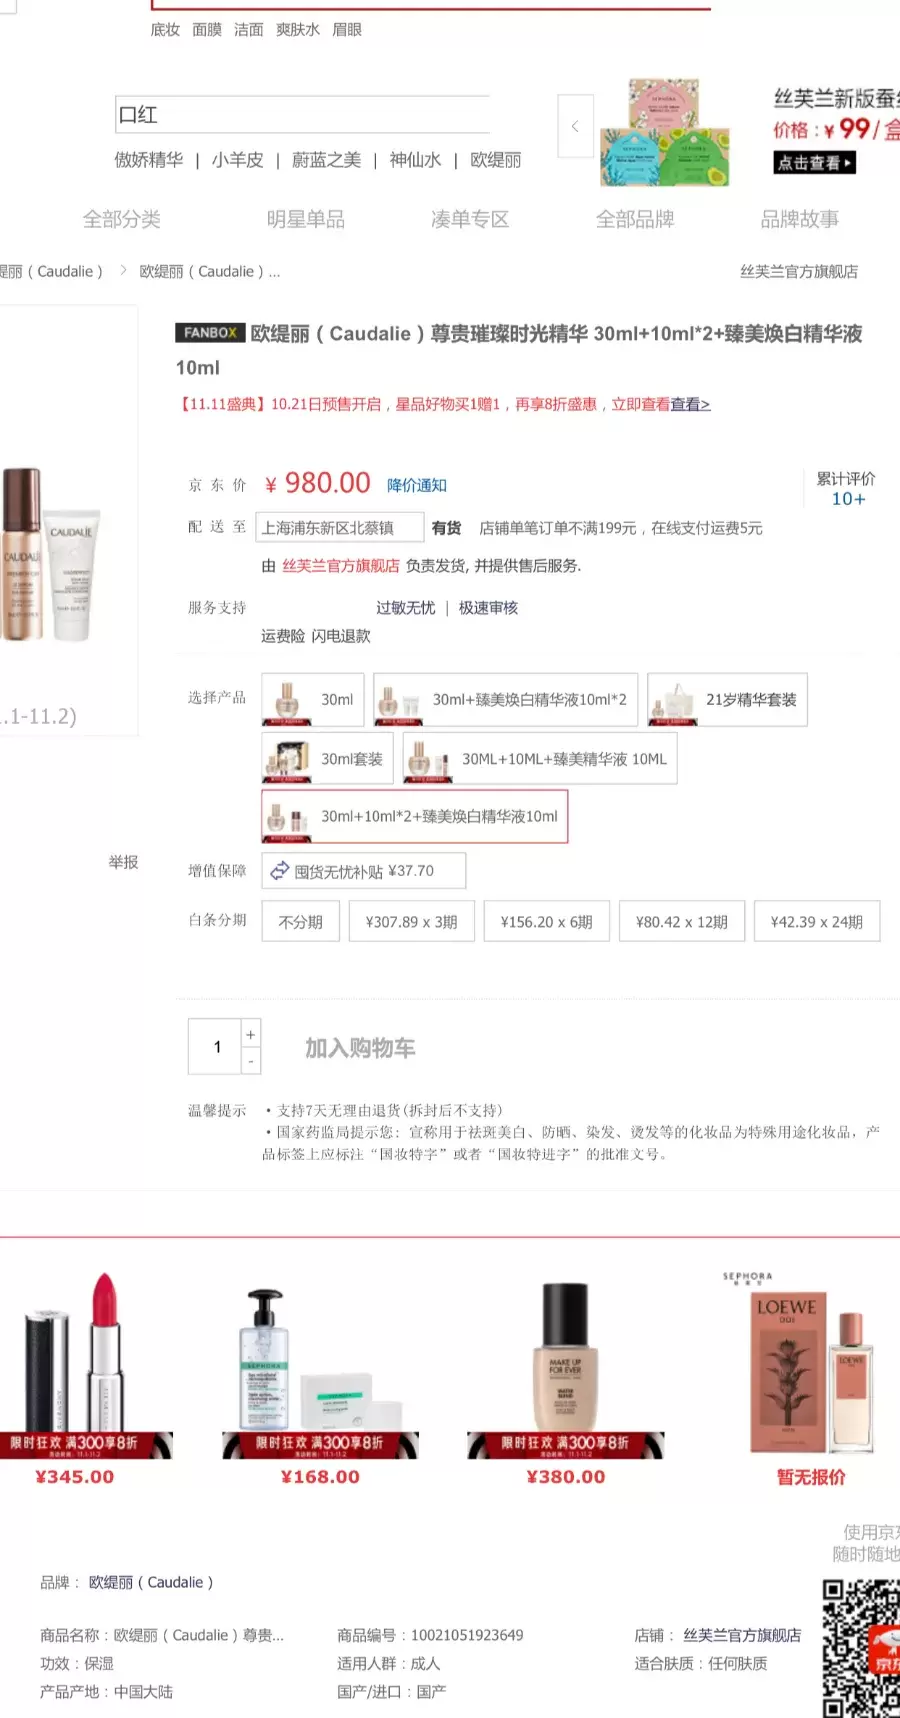 上海曝光虚假违法广告典型案例：丝芙兰、欧缇丽被罚款40万